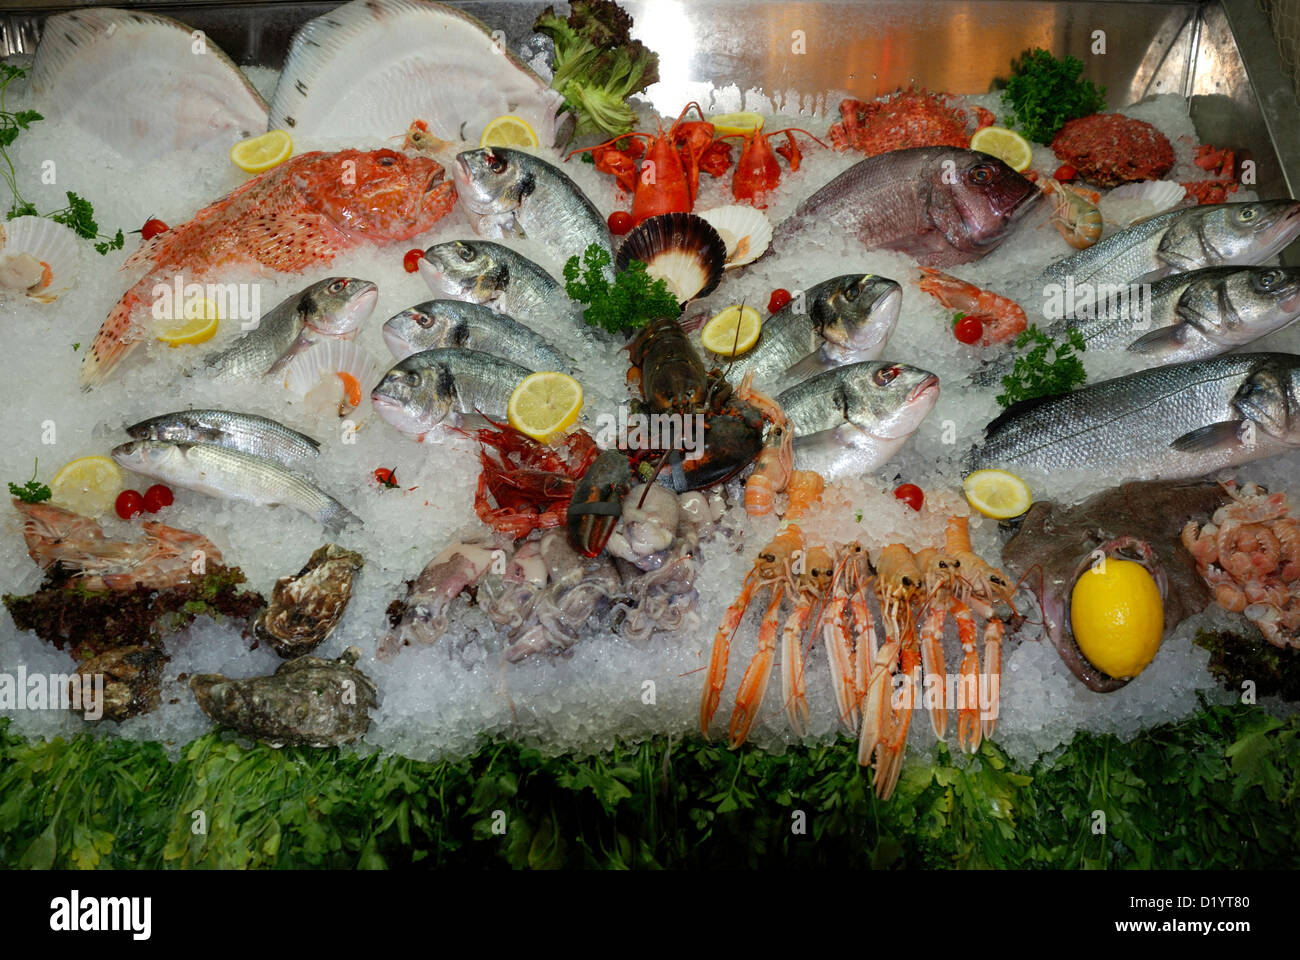 Les fruits de mer de la mer Adriatique sur un marché à Venise. Banque D'Images